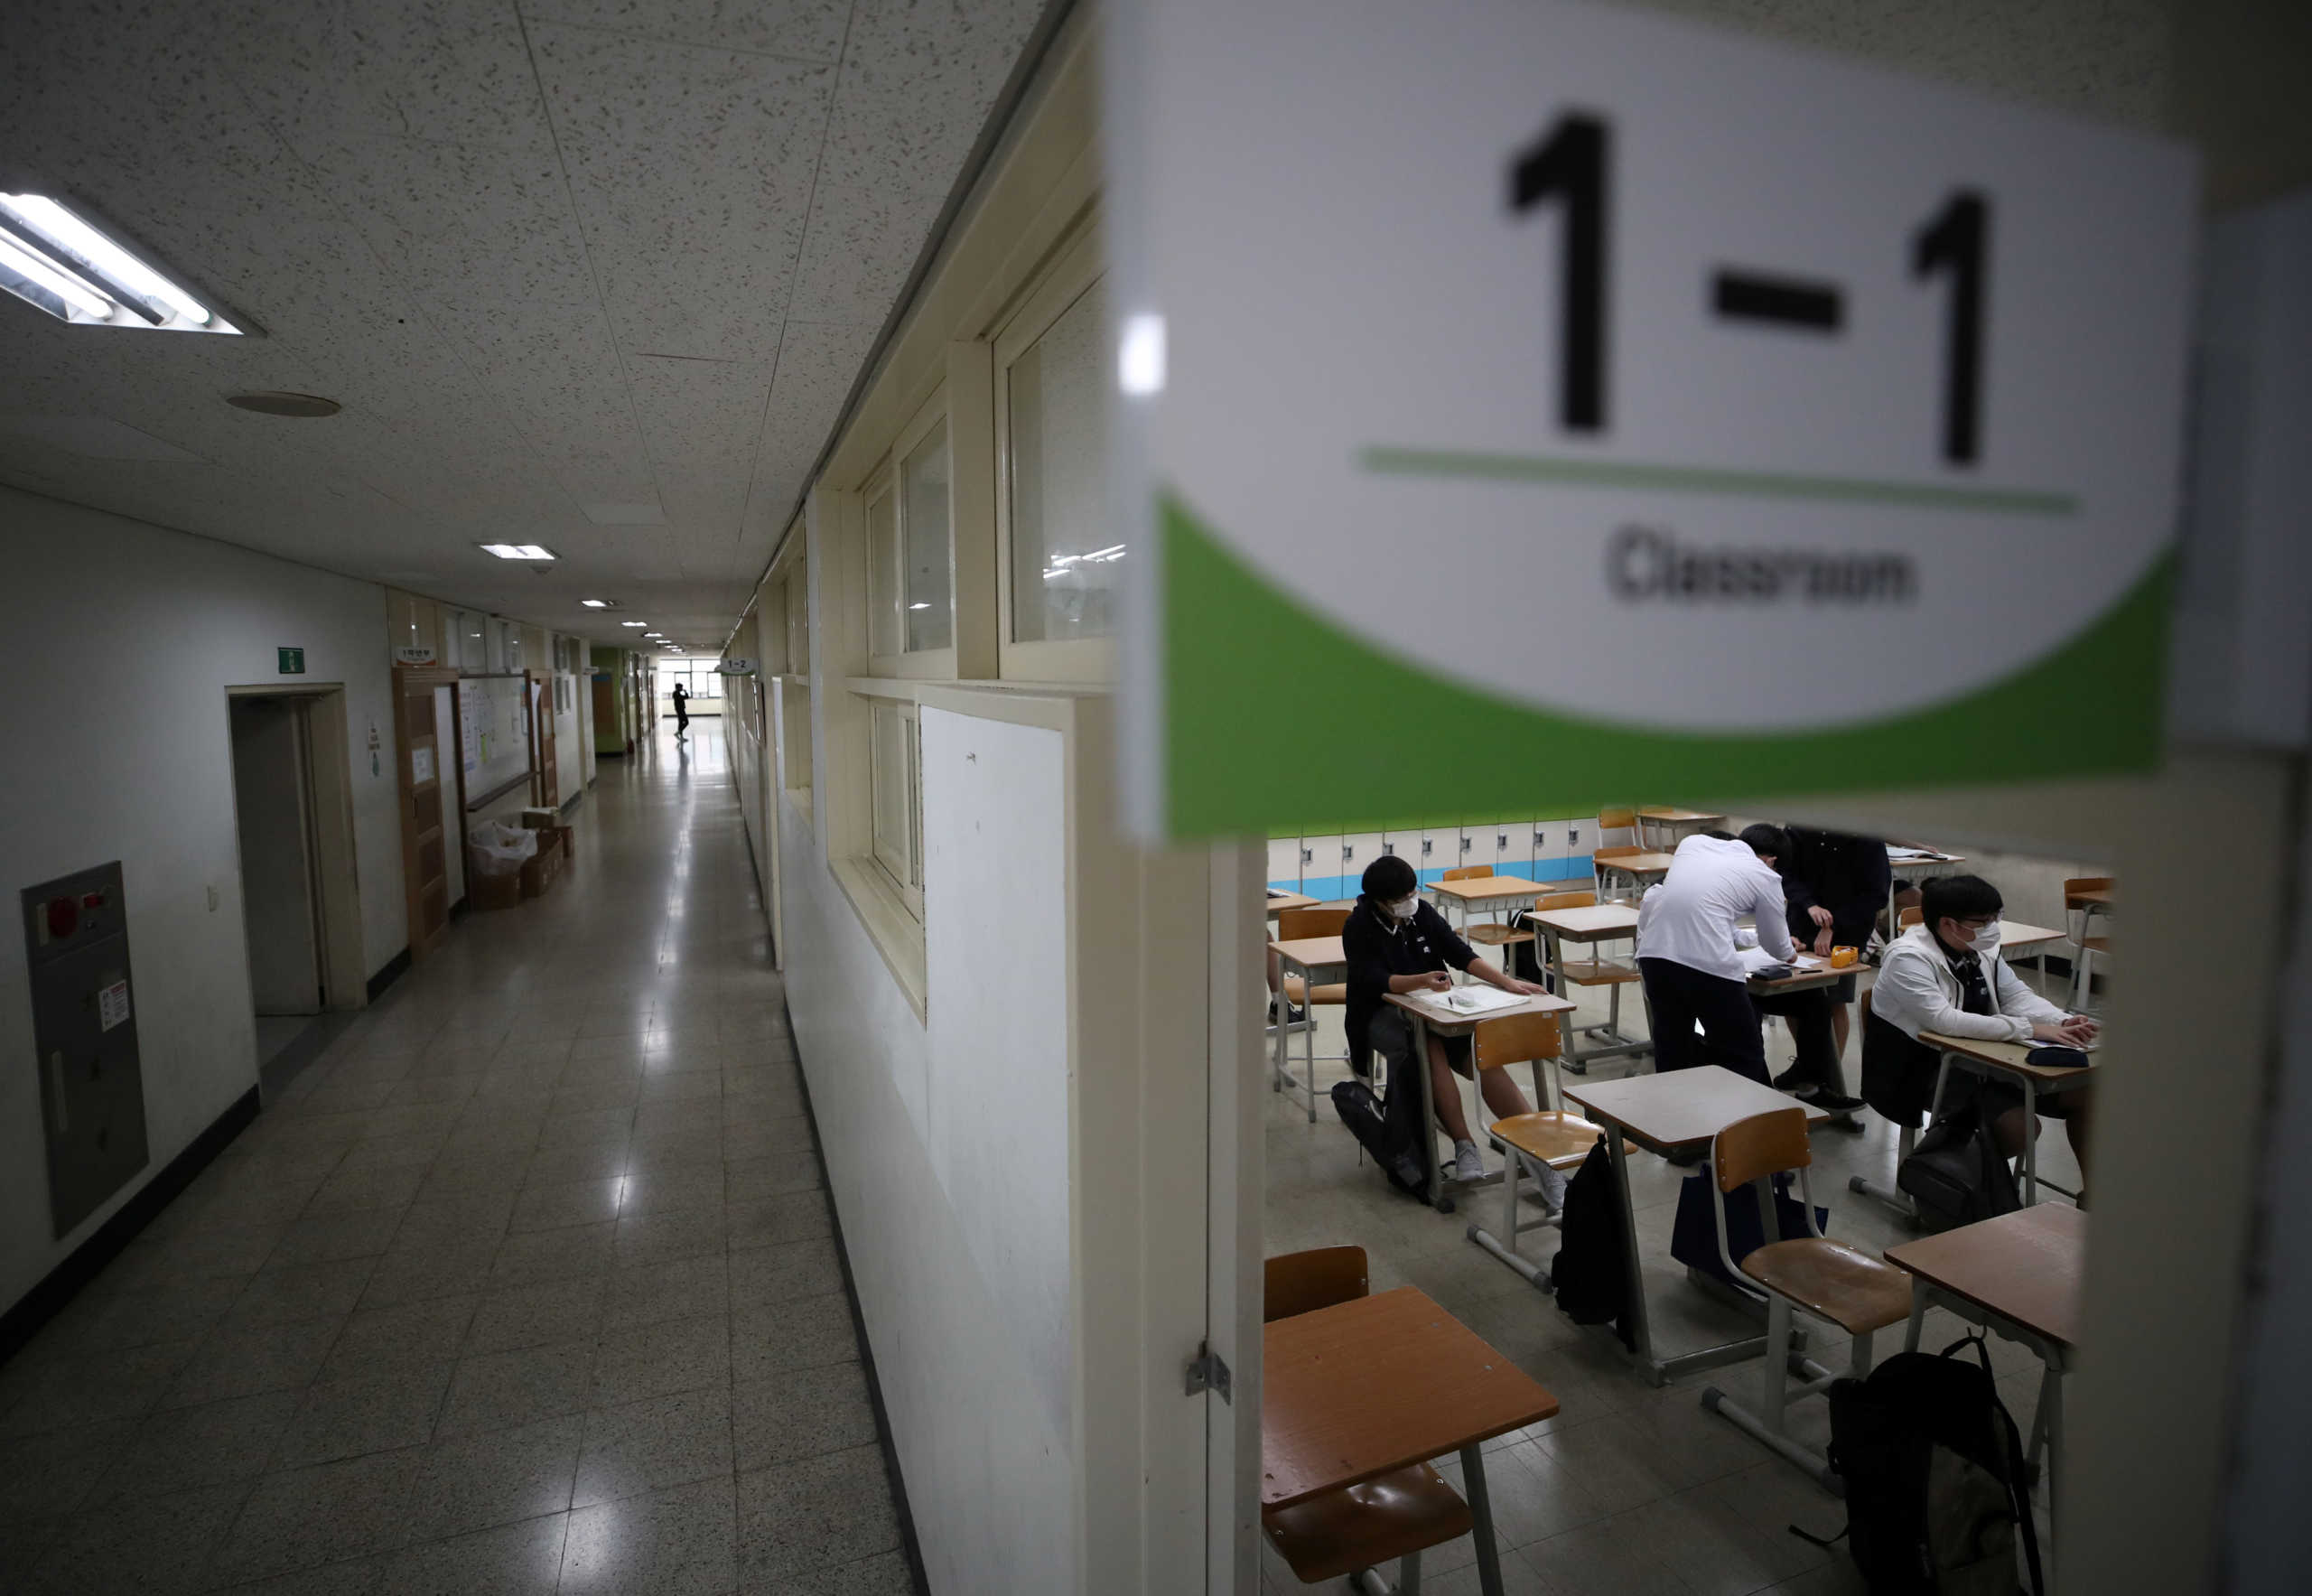 Σεούλ: Ανοίγουν ξανά τα σχολεία μετά τη μείωση των κρουσμάτων κορονοϊού